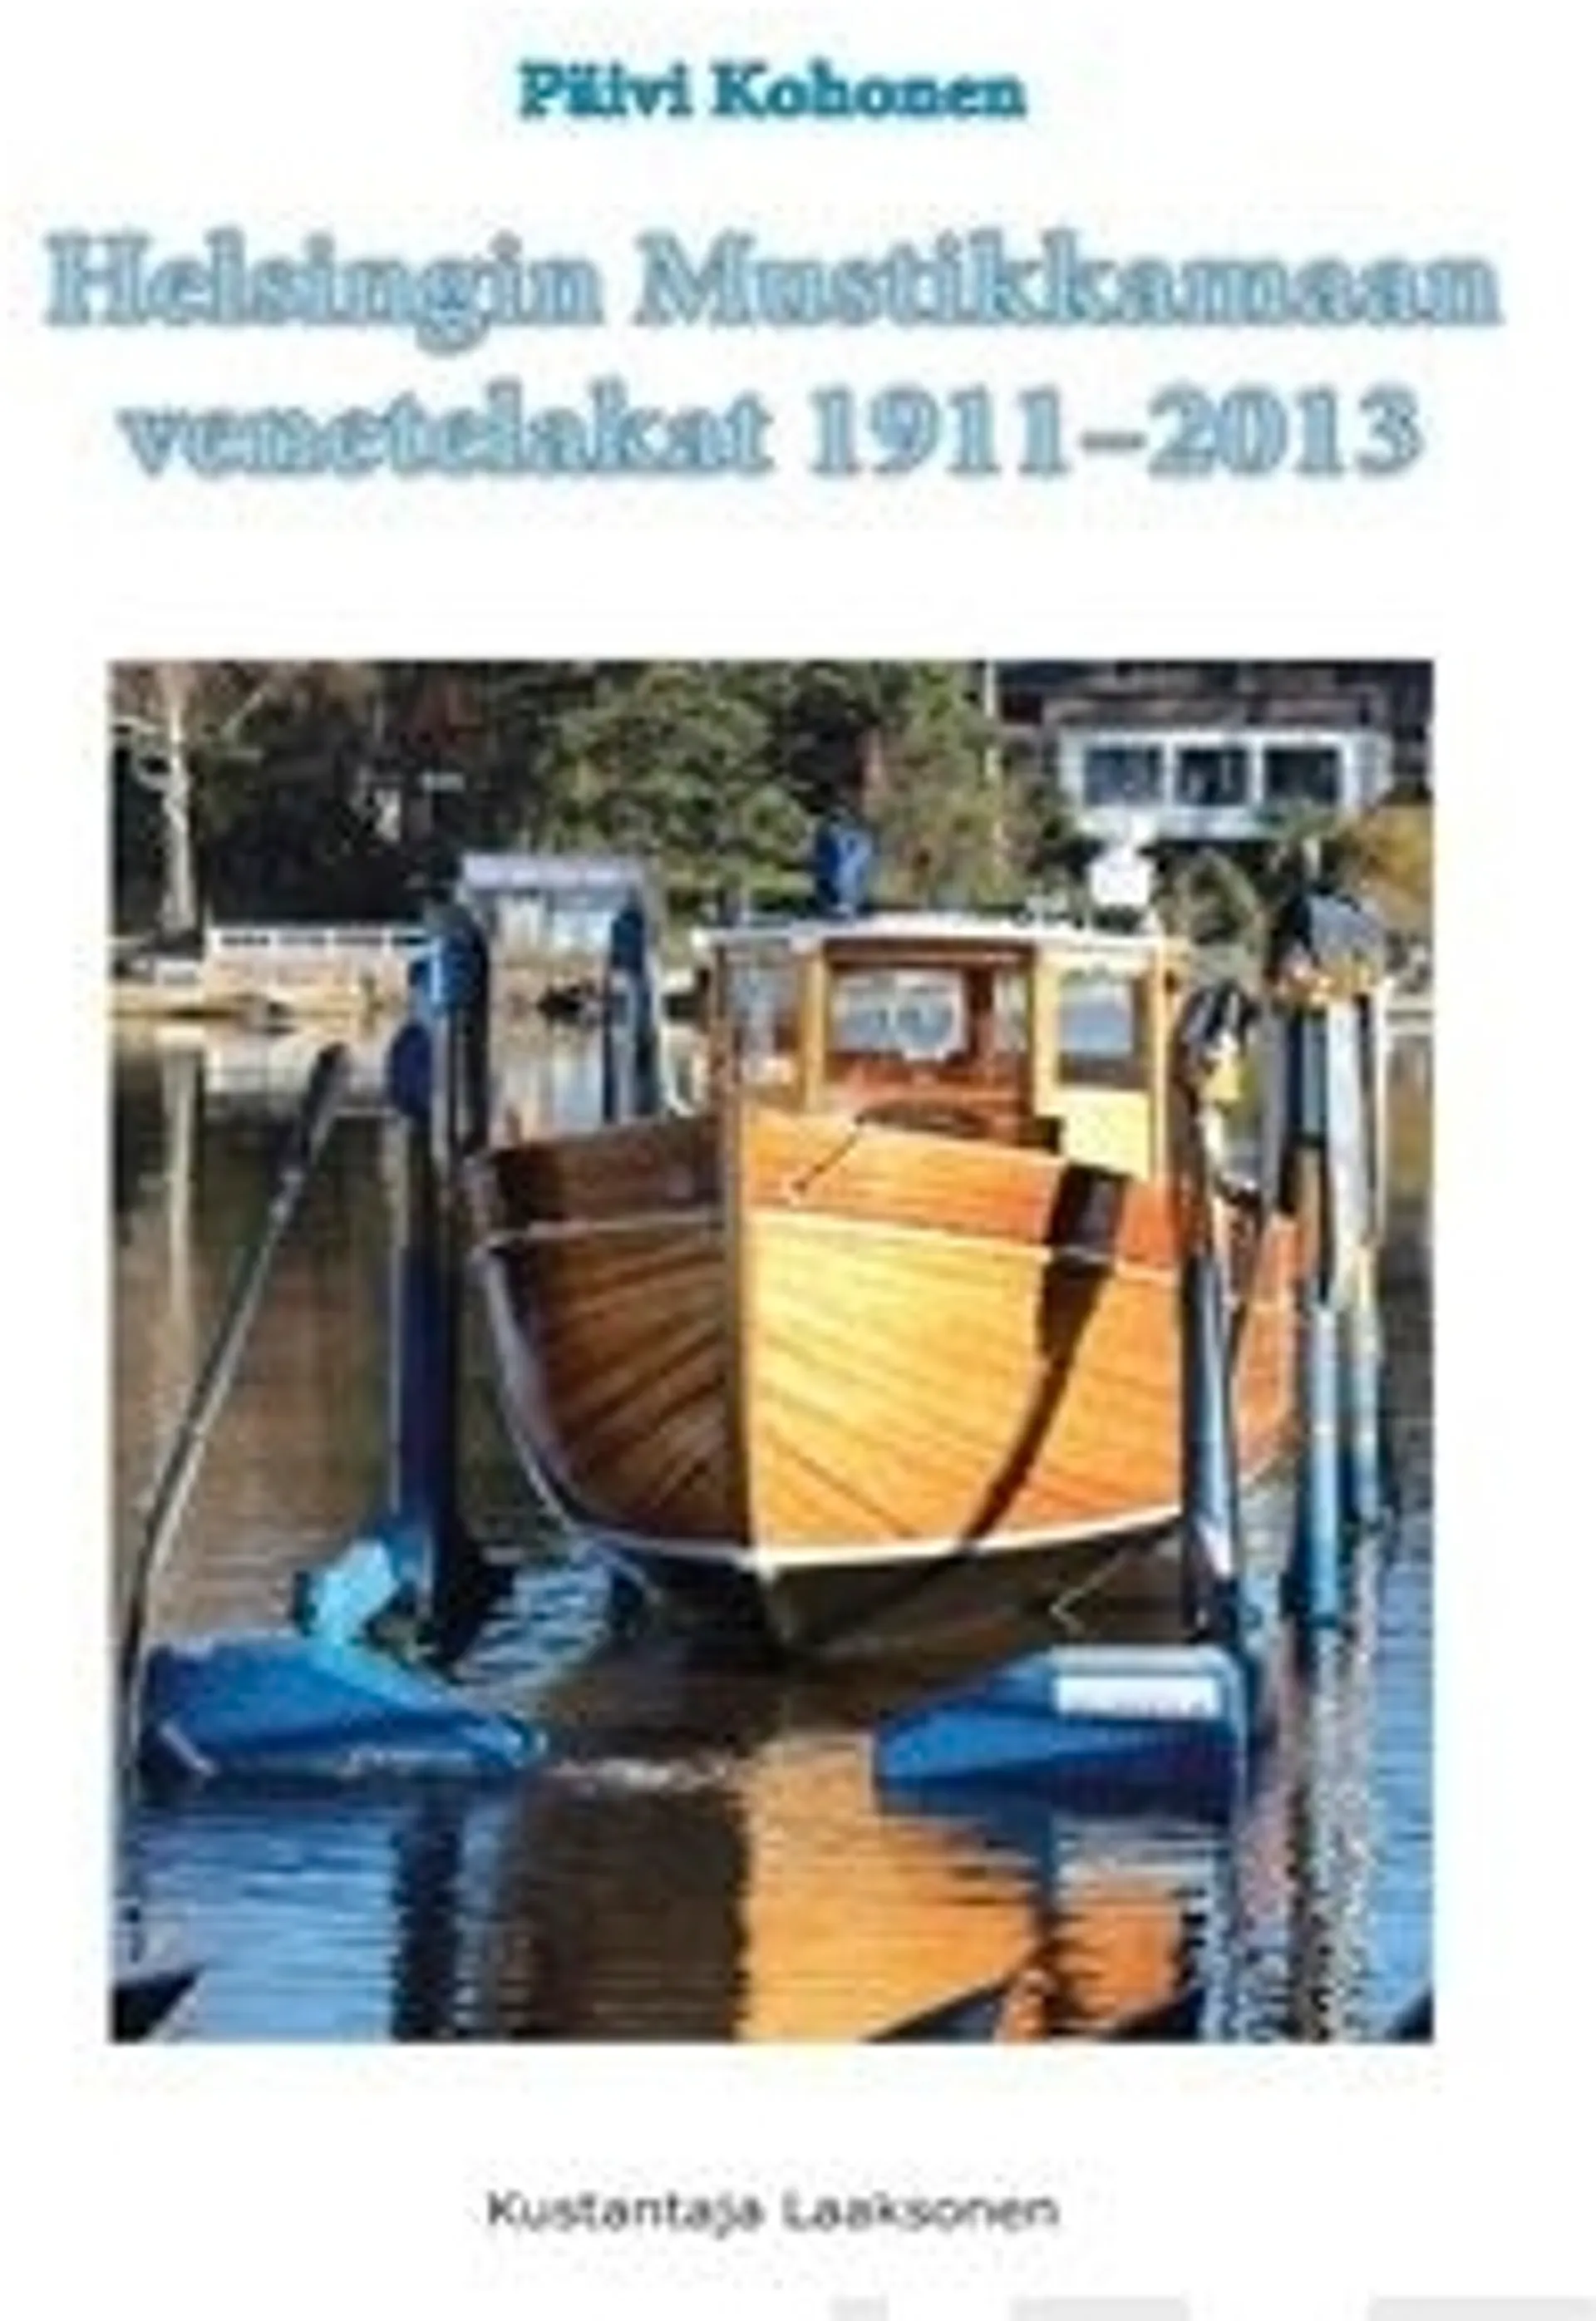 Kohonen, Helsingin Mustikkamaan venetelakat 1911-2013